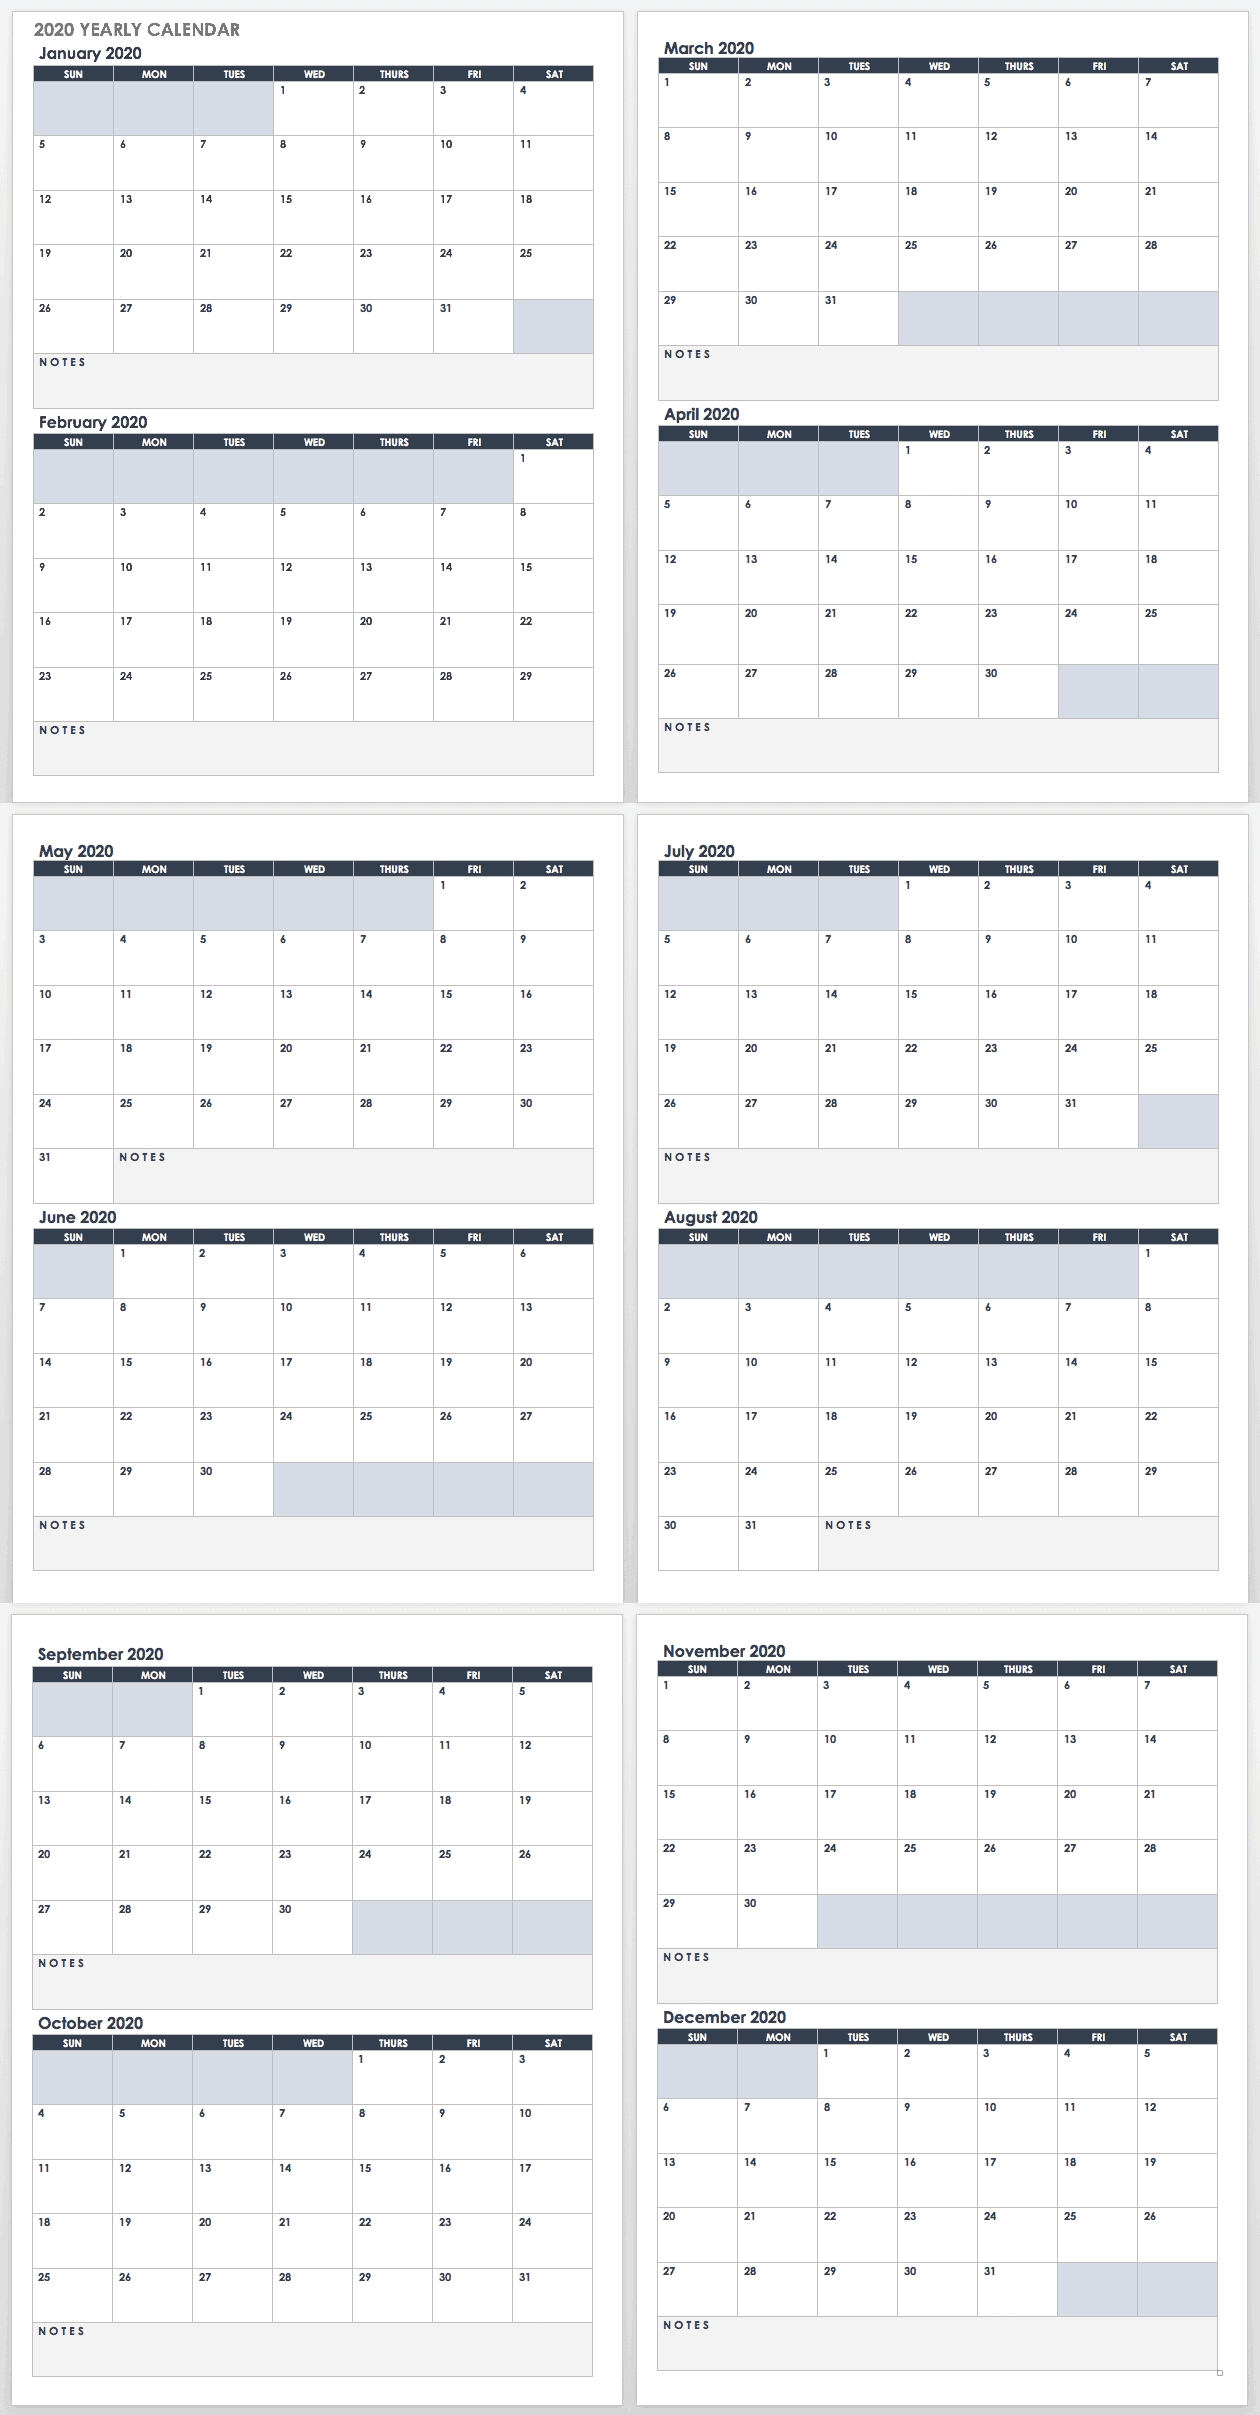 2020 Employee Attendance Calendar Free | Calendar For Planning-Employee Attendance Calendar 2021 Printable